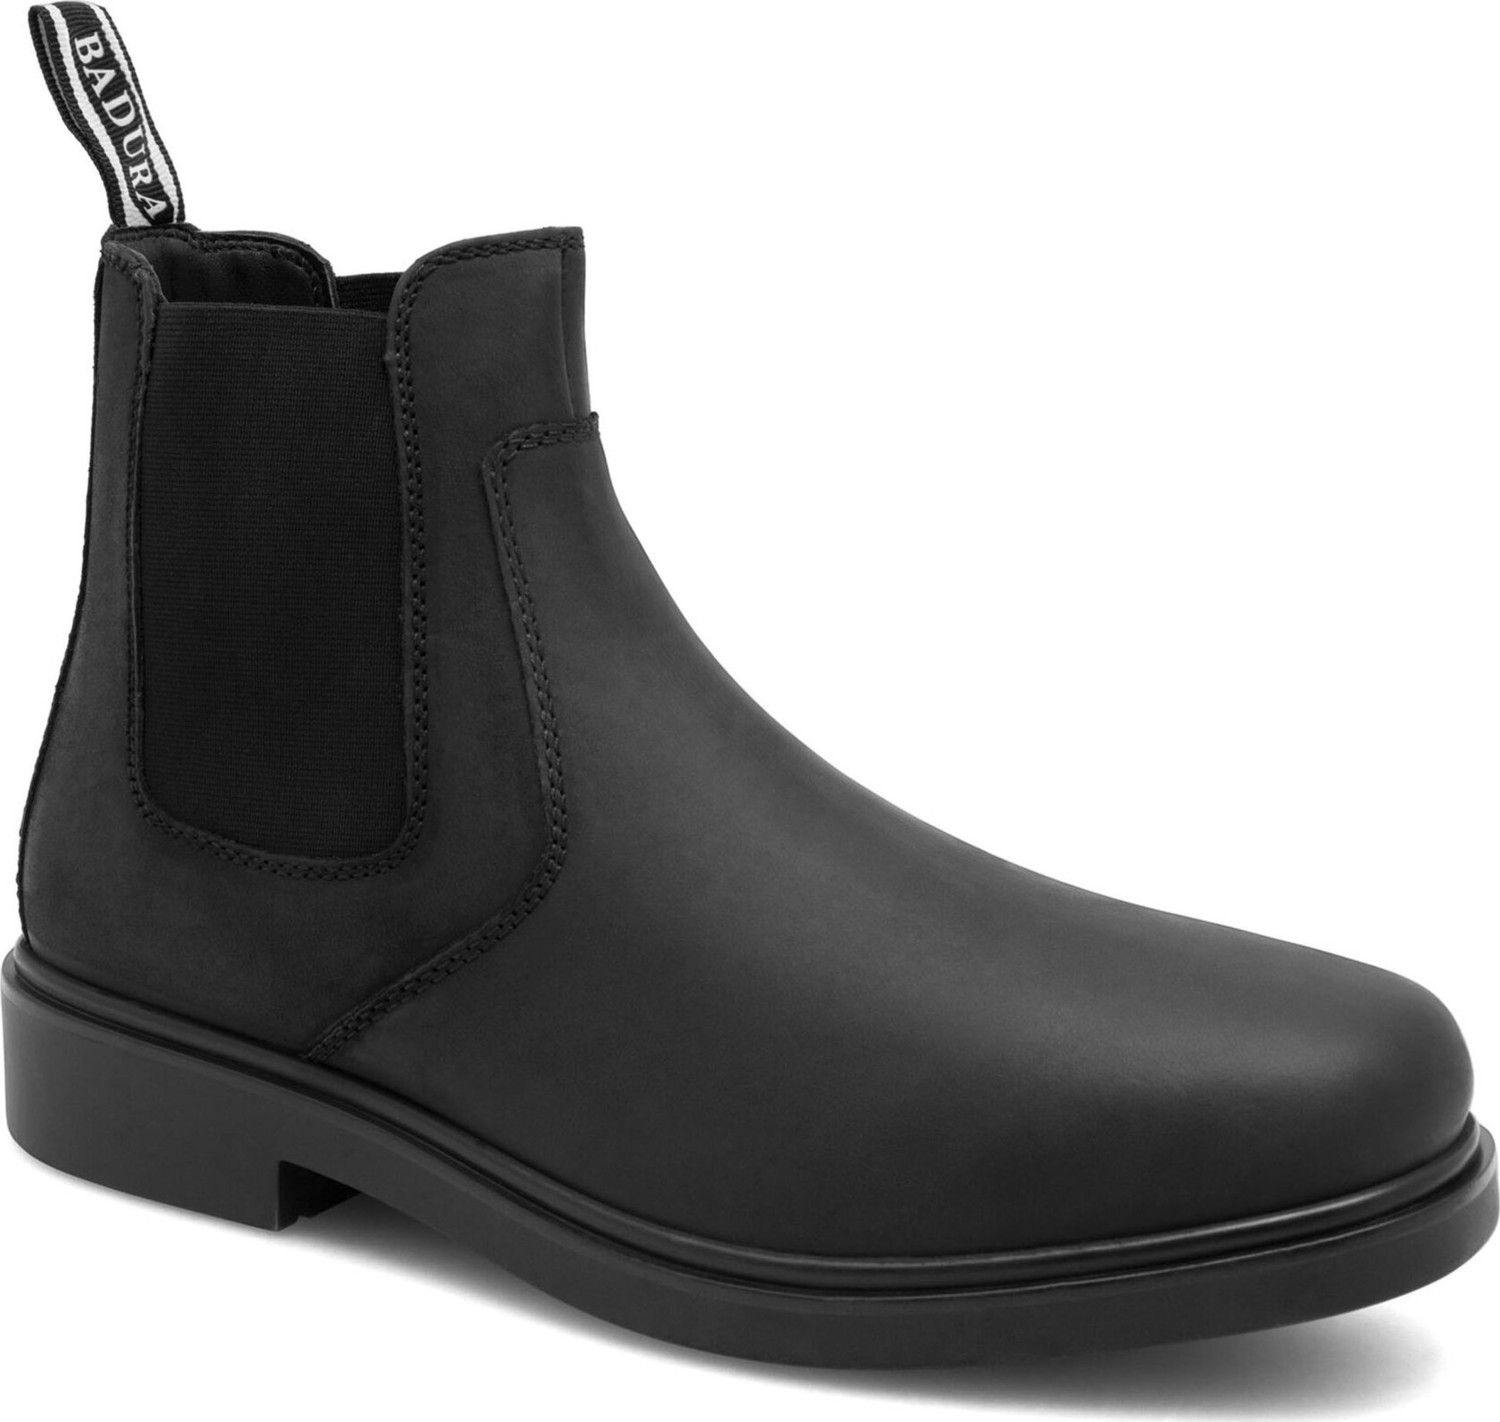 Kotníková obuv s elastickým prvkem Badura DYLAN-01 MI08 Černá